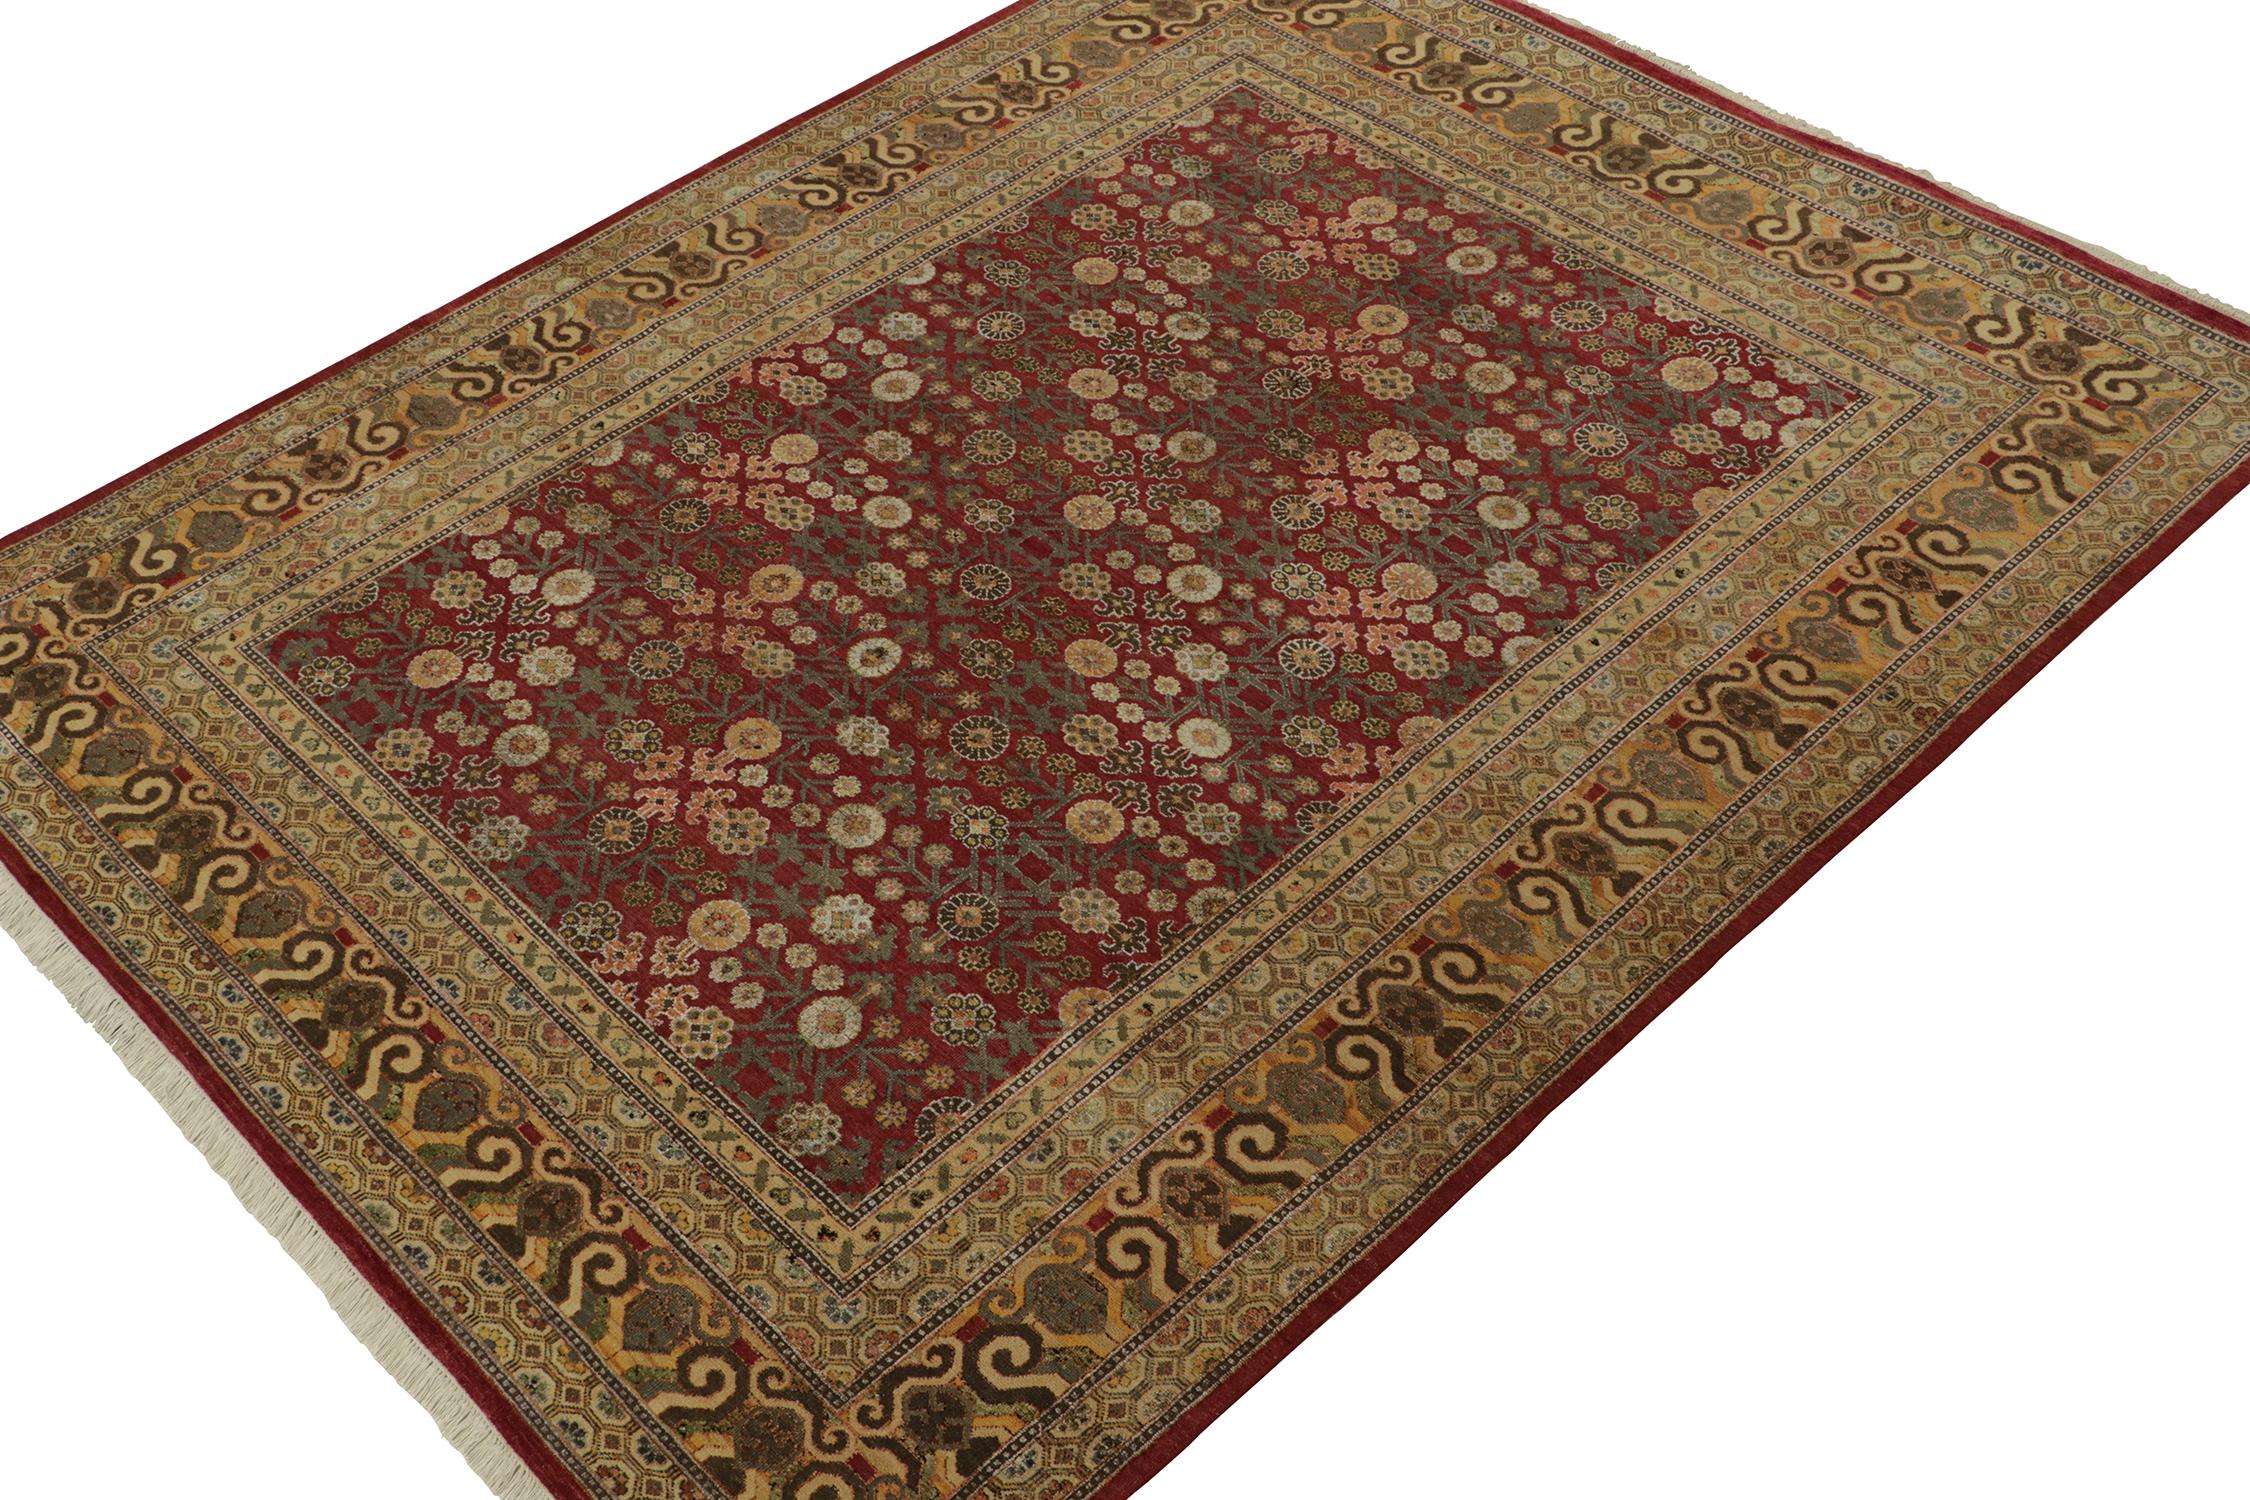 Un tapis 8x10 inspiré des styles de tapis Khotan anciens, de la collection Modern Classics de Rug & Kilim. Noué à la main en laine, bénéficiant d'un jeu de couleurs particulièrement unique pour cette provenance inspirante.
Plus loin dans la